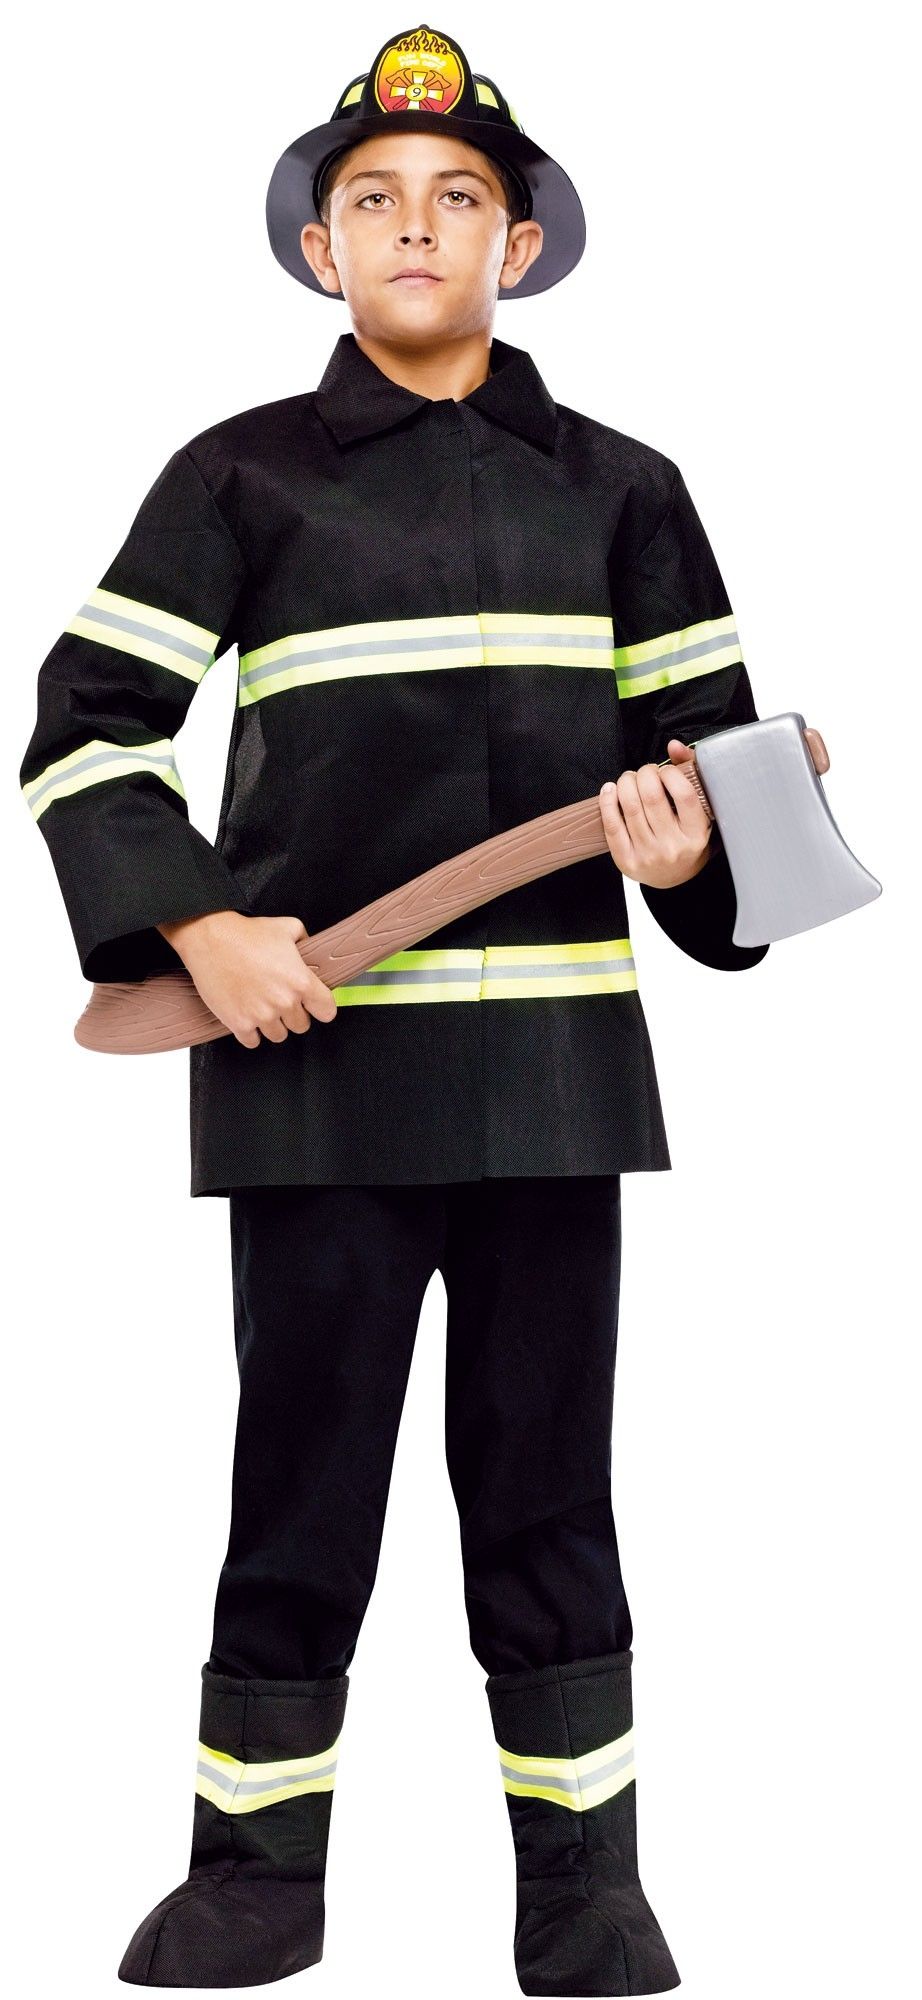 Детский костюм начальника пожарного включает в себя удлиненную черную курто...